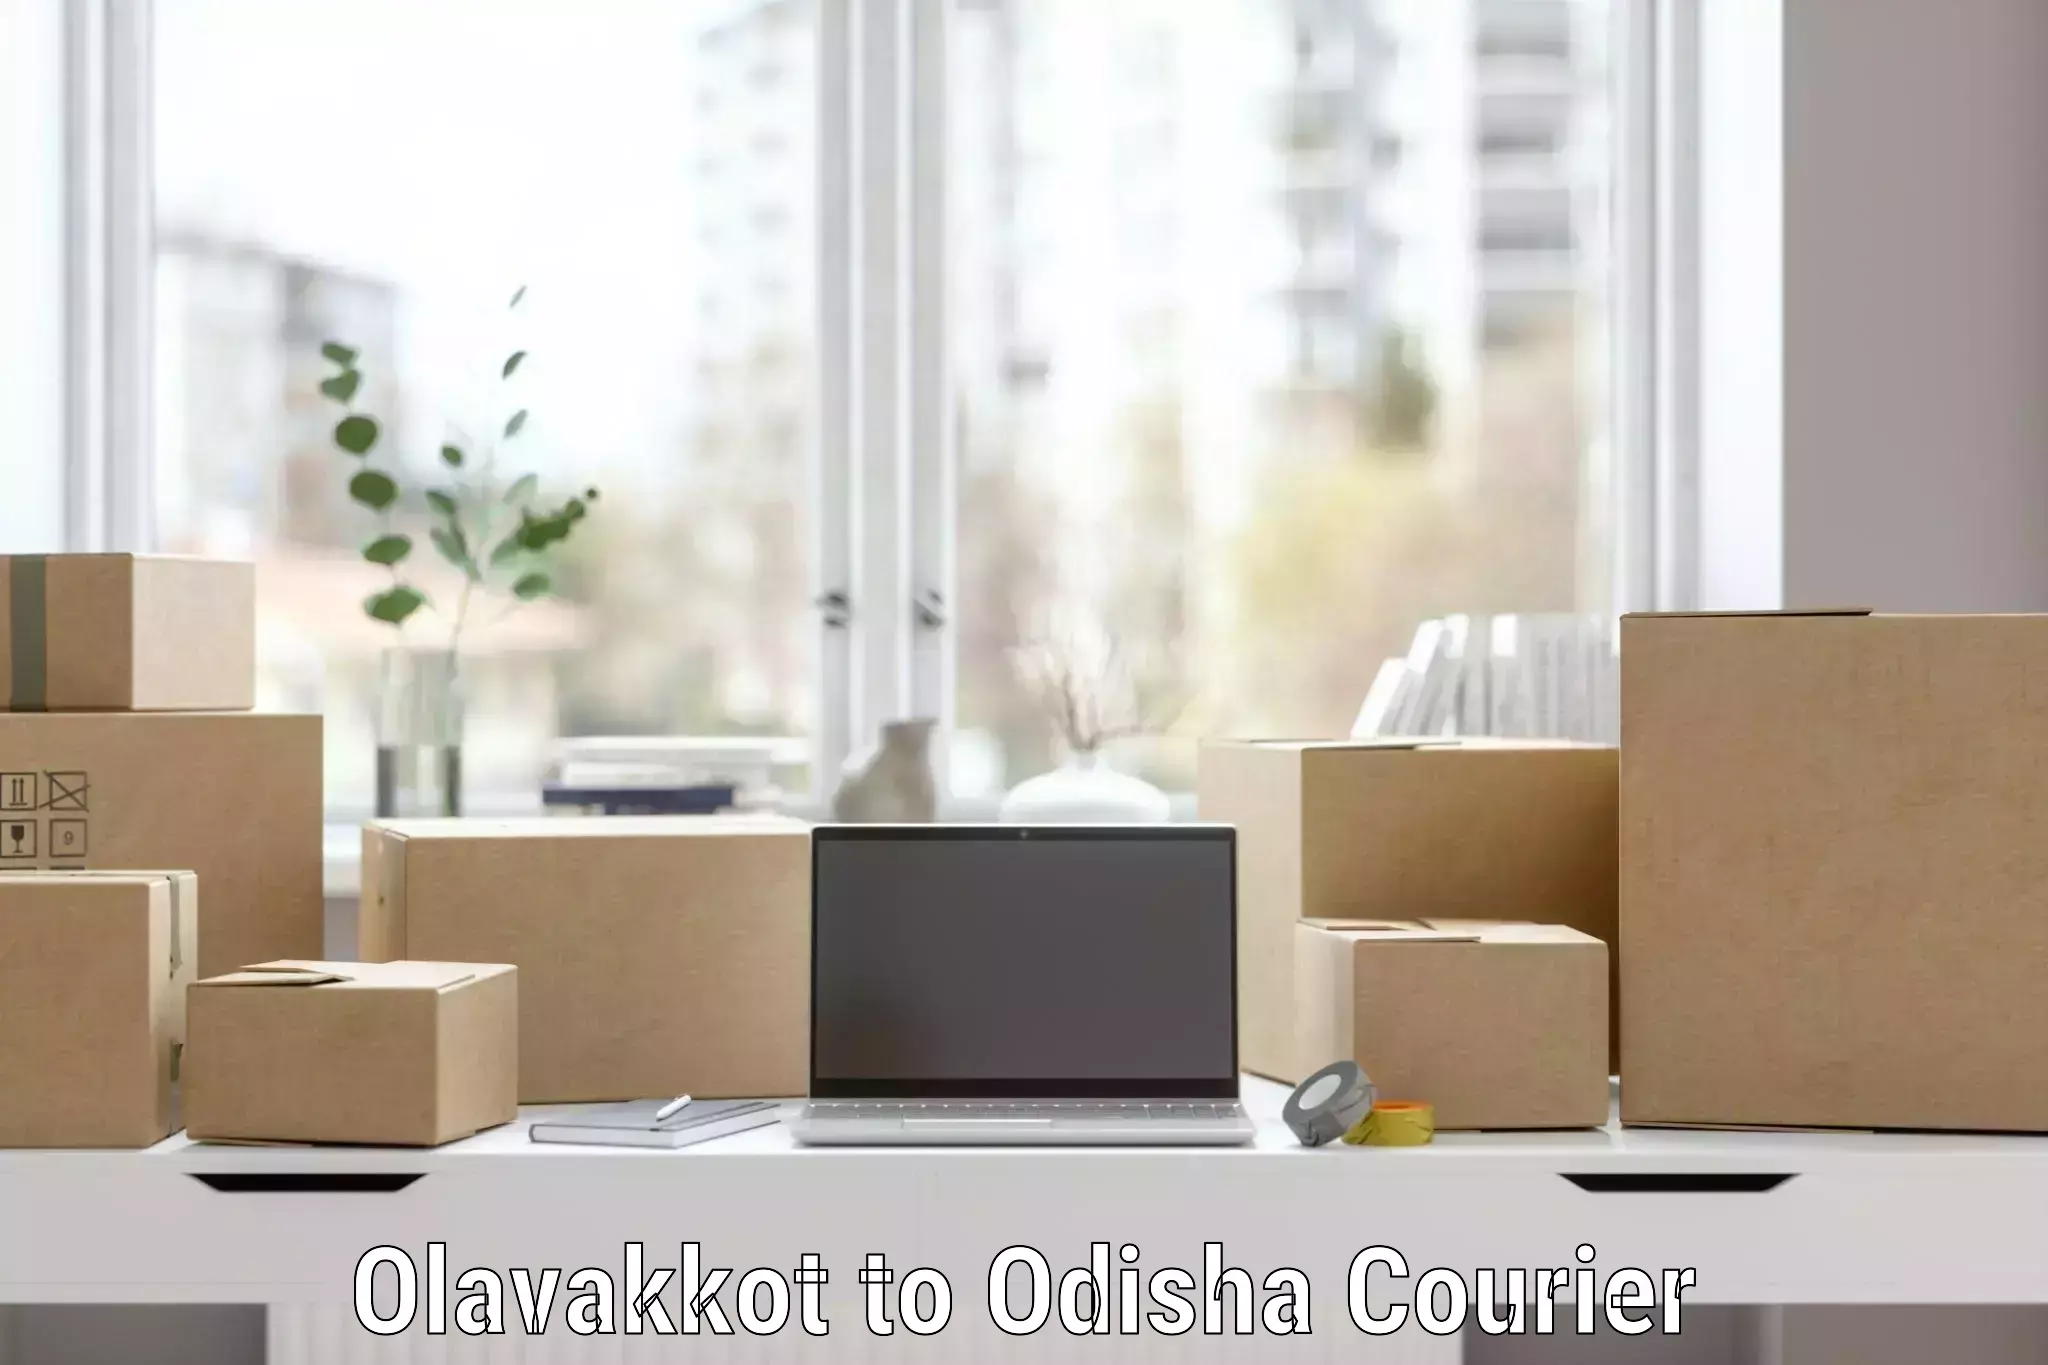 Furniture transport solutions Olavakkot to Baleswar